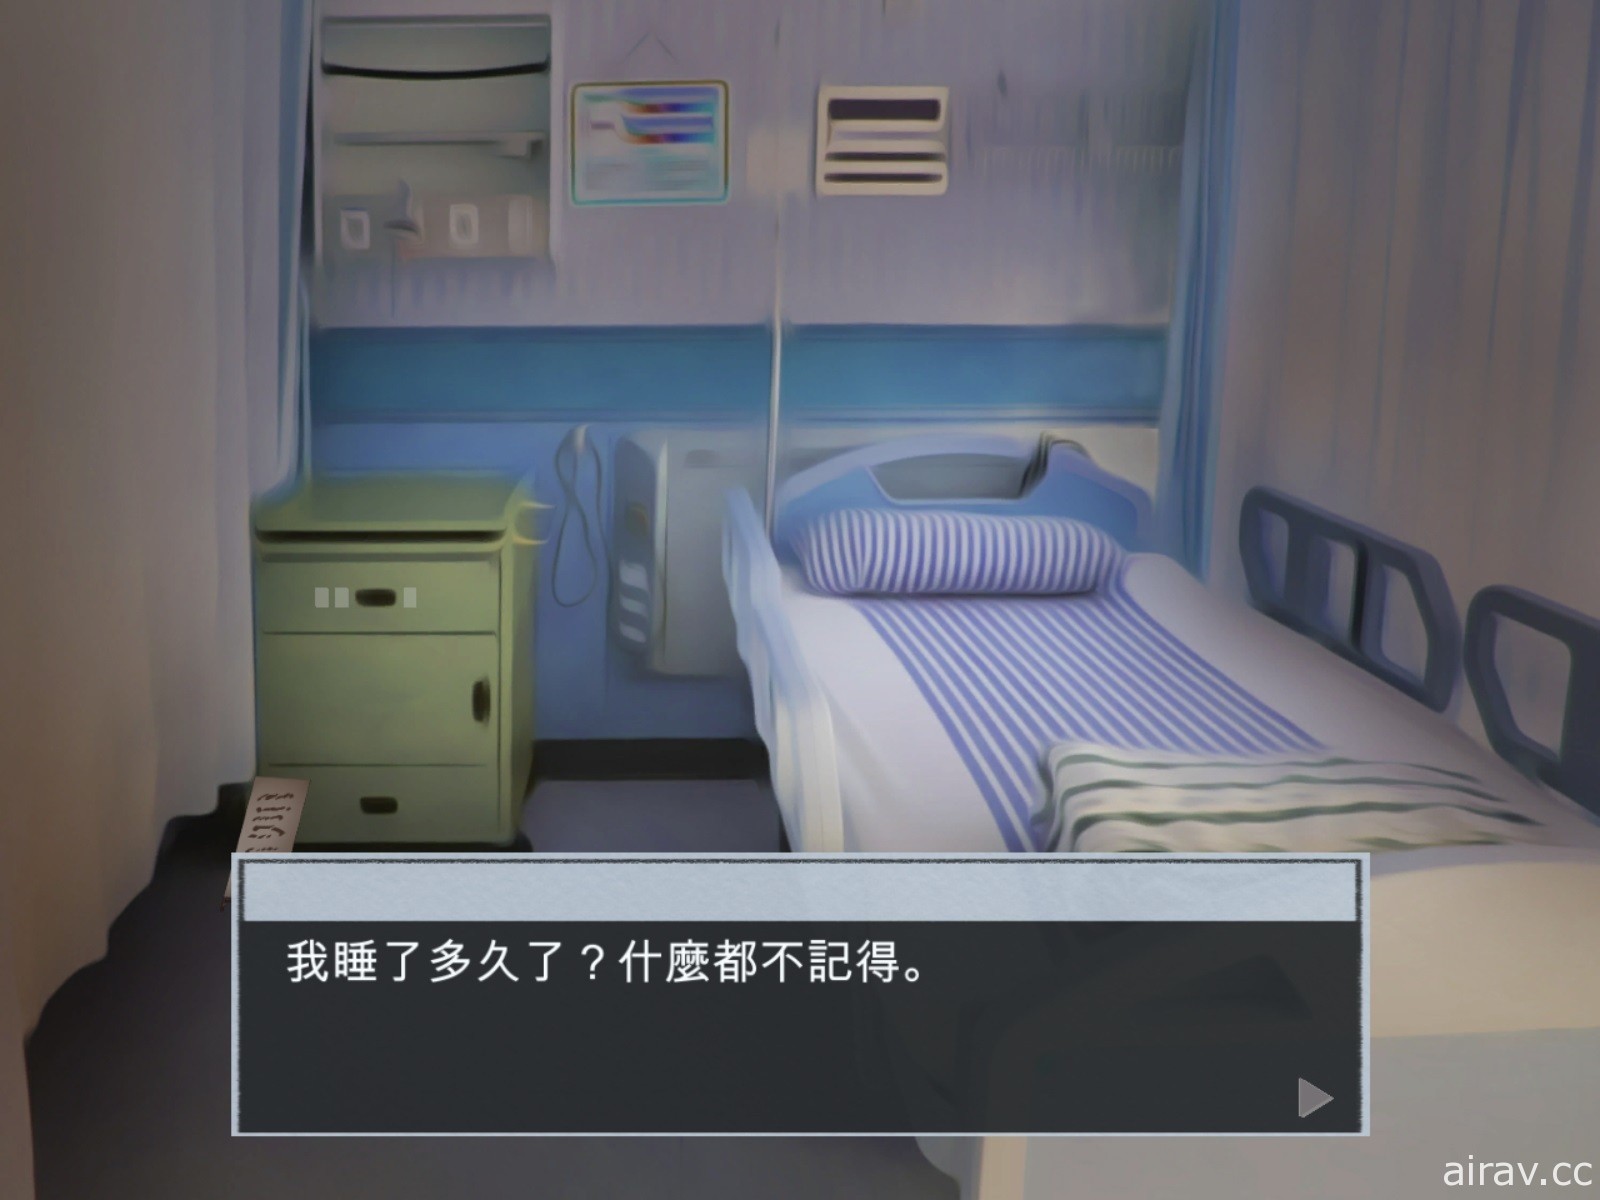 台灣醫師耗時三年製作解謎遊戲《脫出 失憶病棟》已登上 Steam 平台